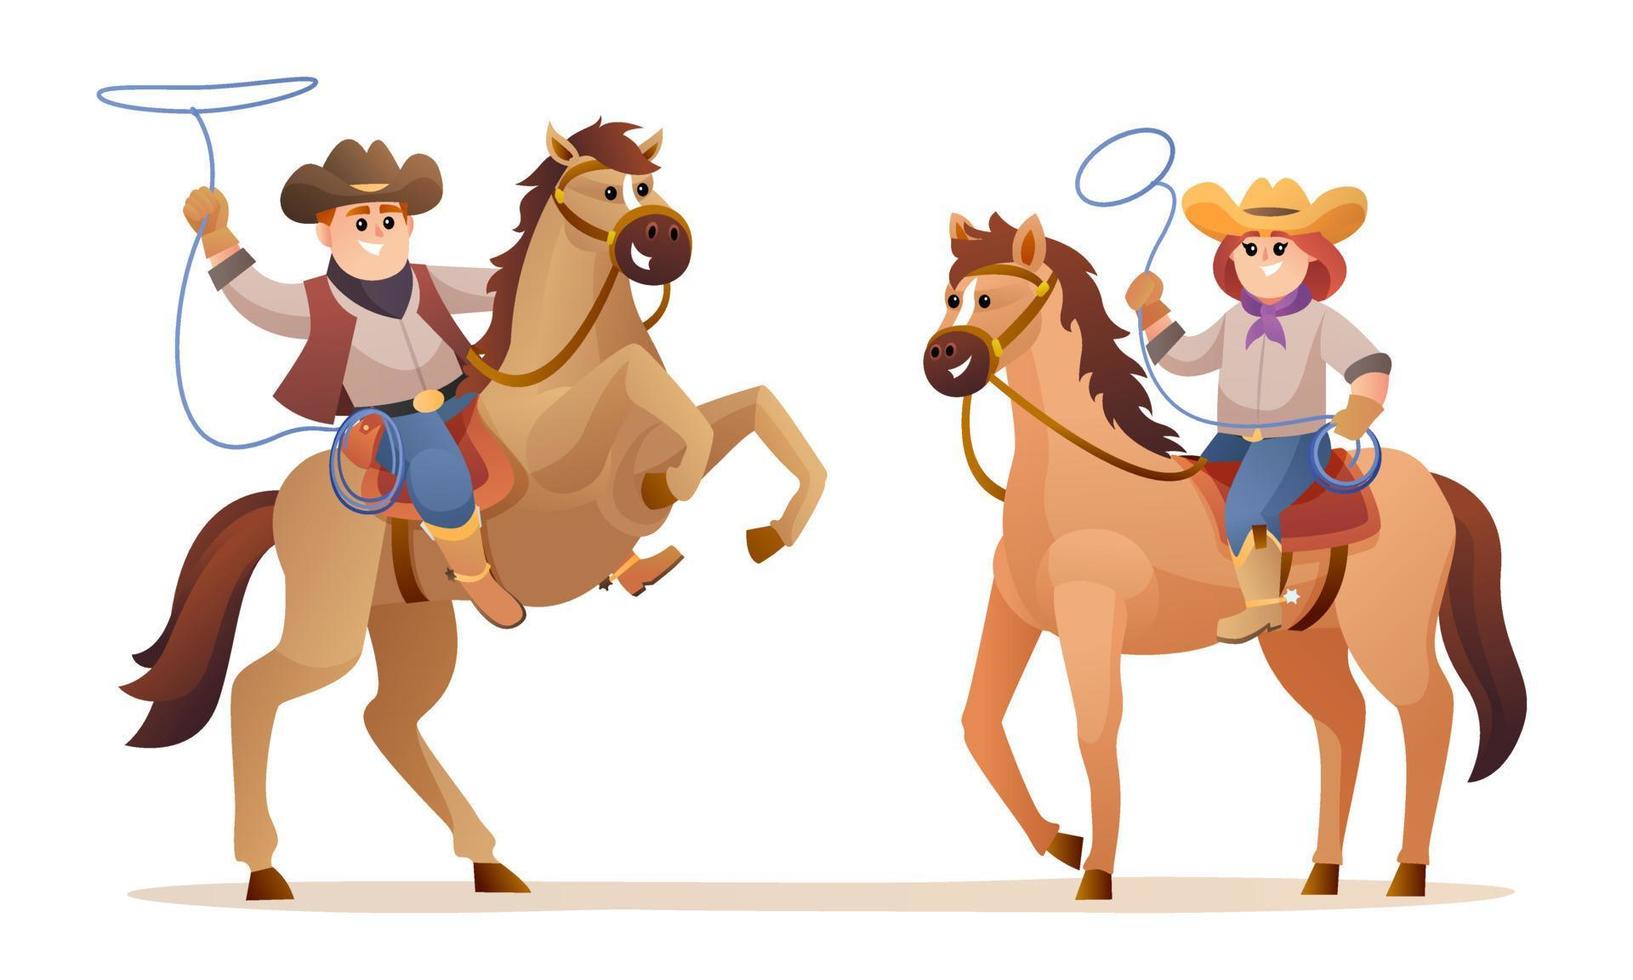 dieren in het wild westerse schattige cowboy en cowgirl rijpaard karakters illustratie vector